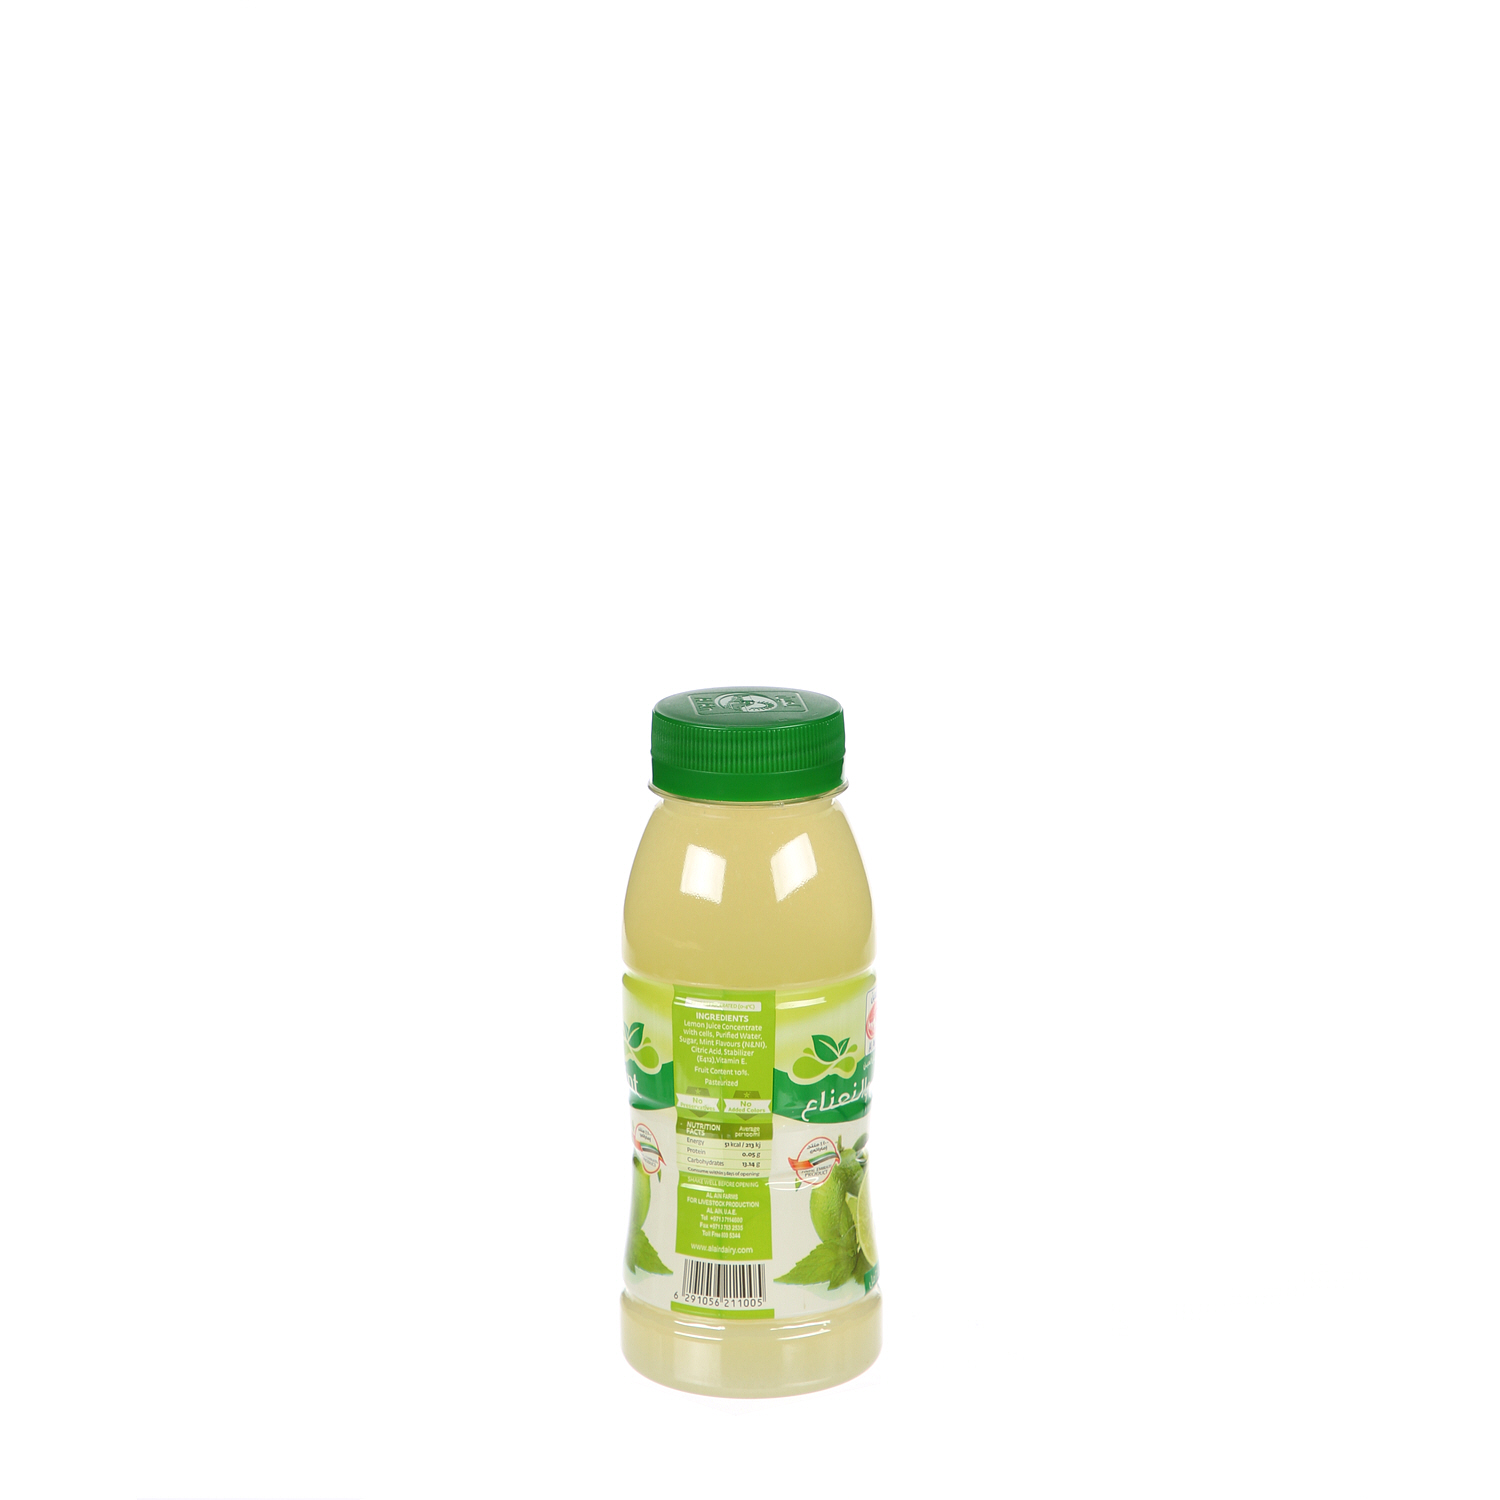 Al Ain Lemon Mint Drink 250ml